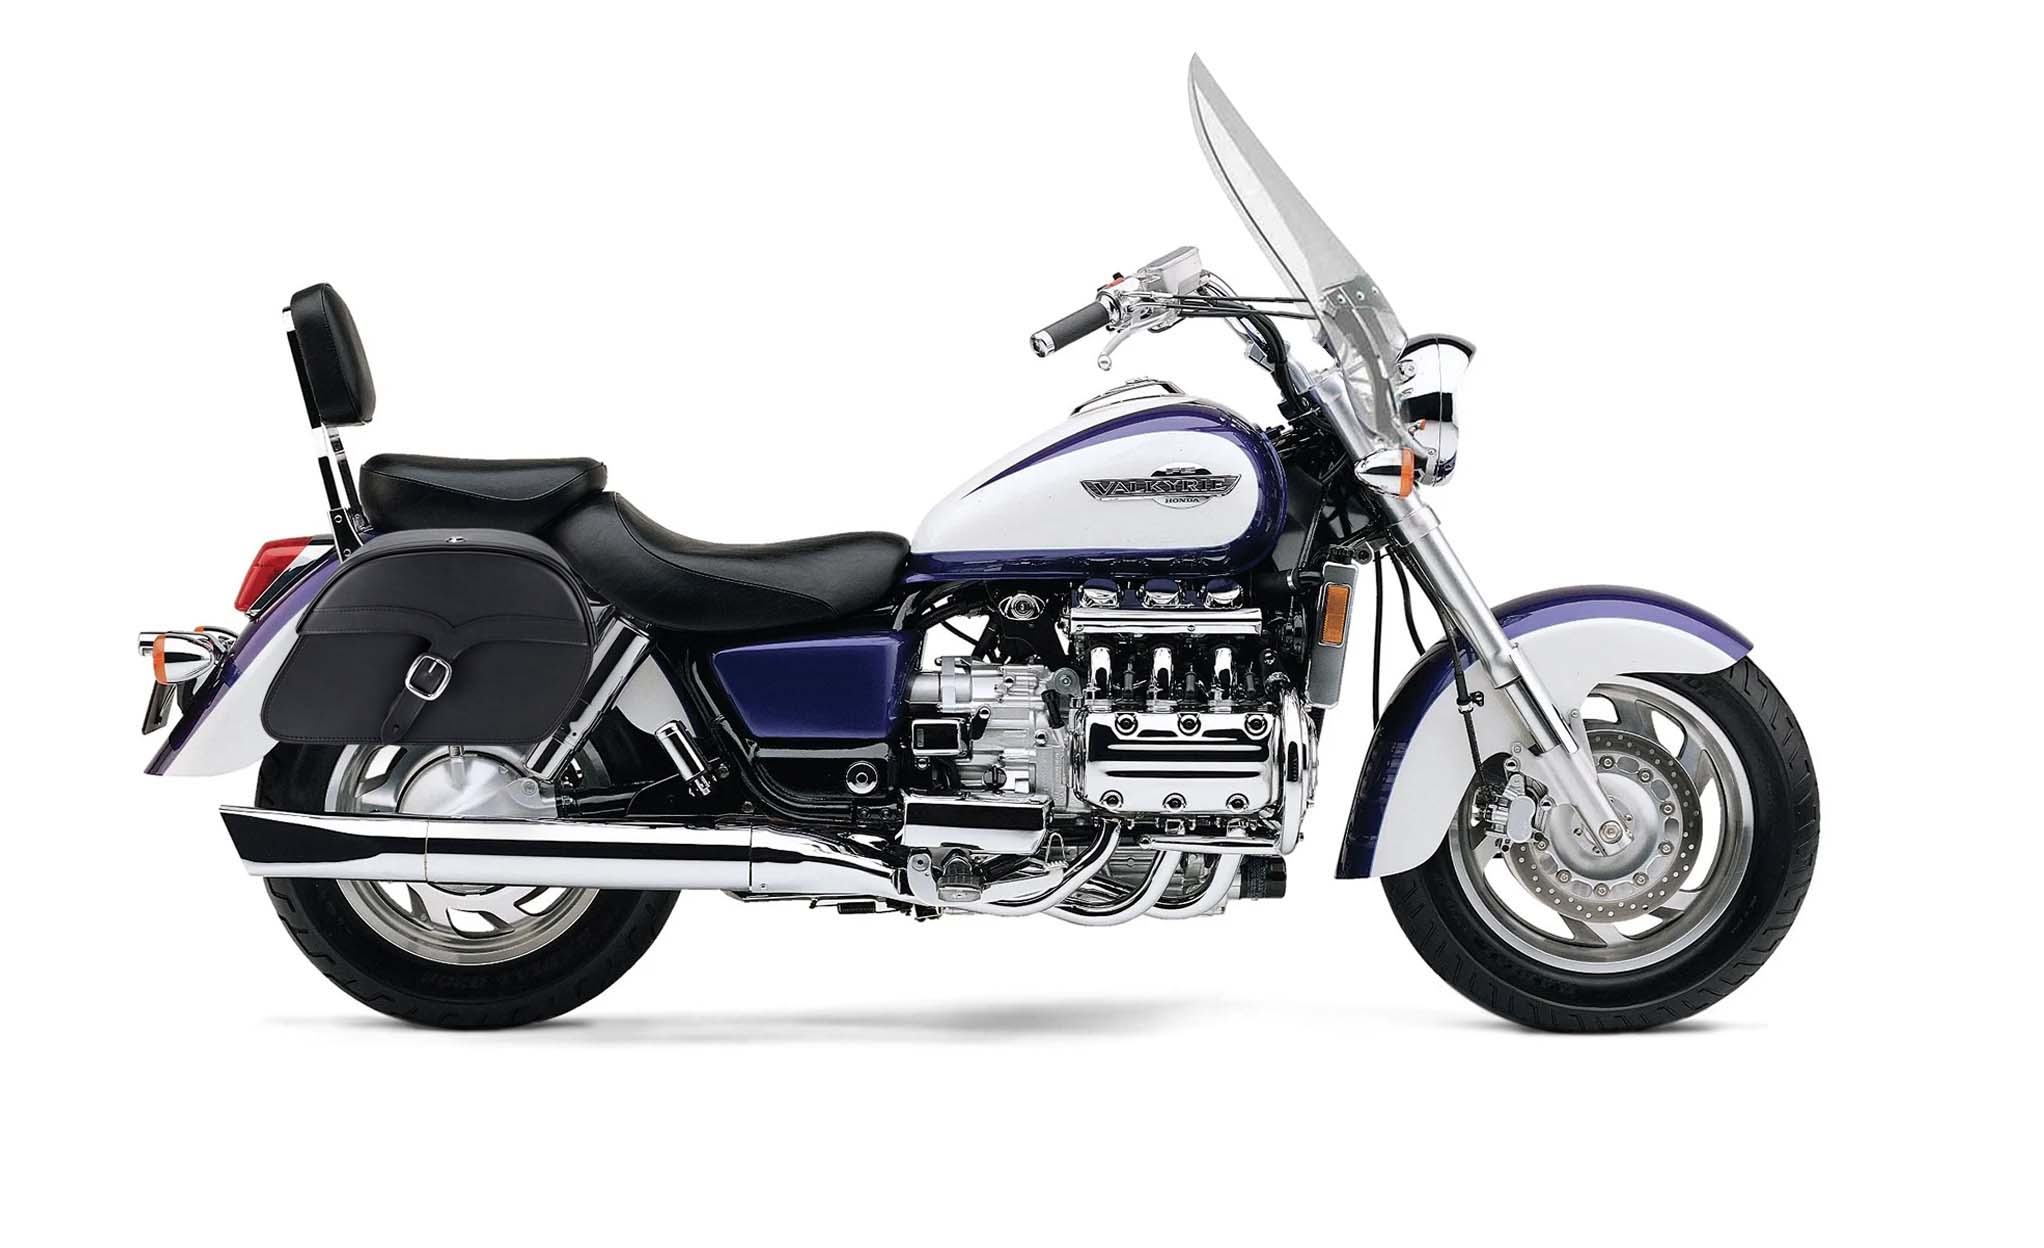 Viking Vintage Medium Honda Valkyrie 1500 Tourer Leather Motorcycle Saddlebags on Bike Photo @expand